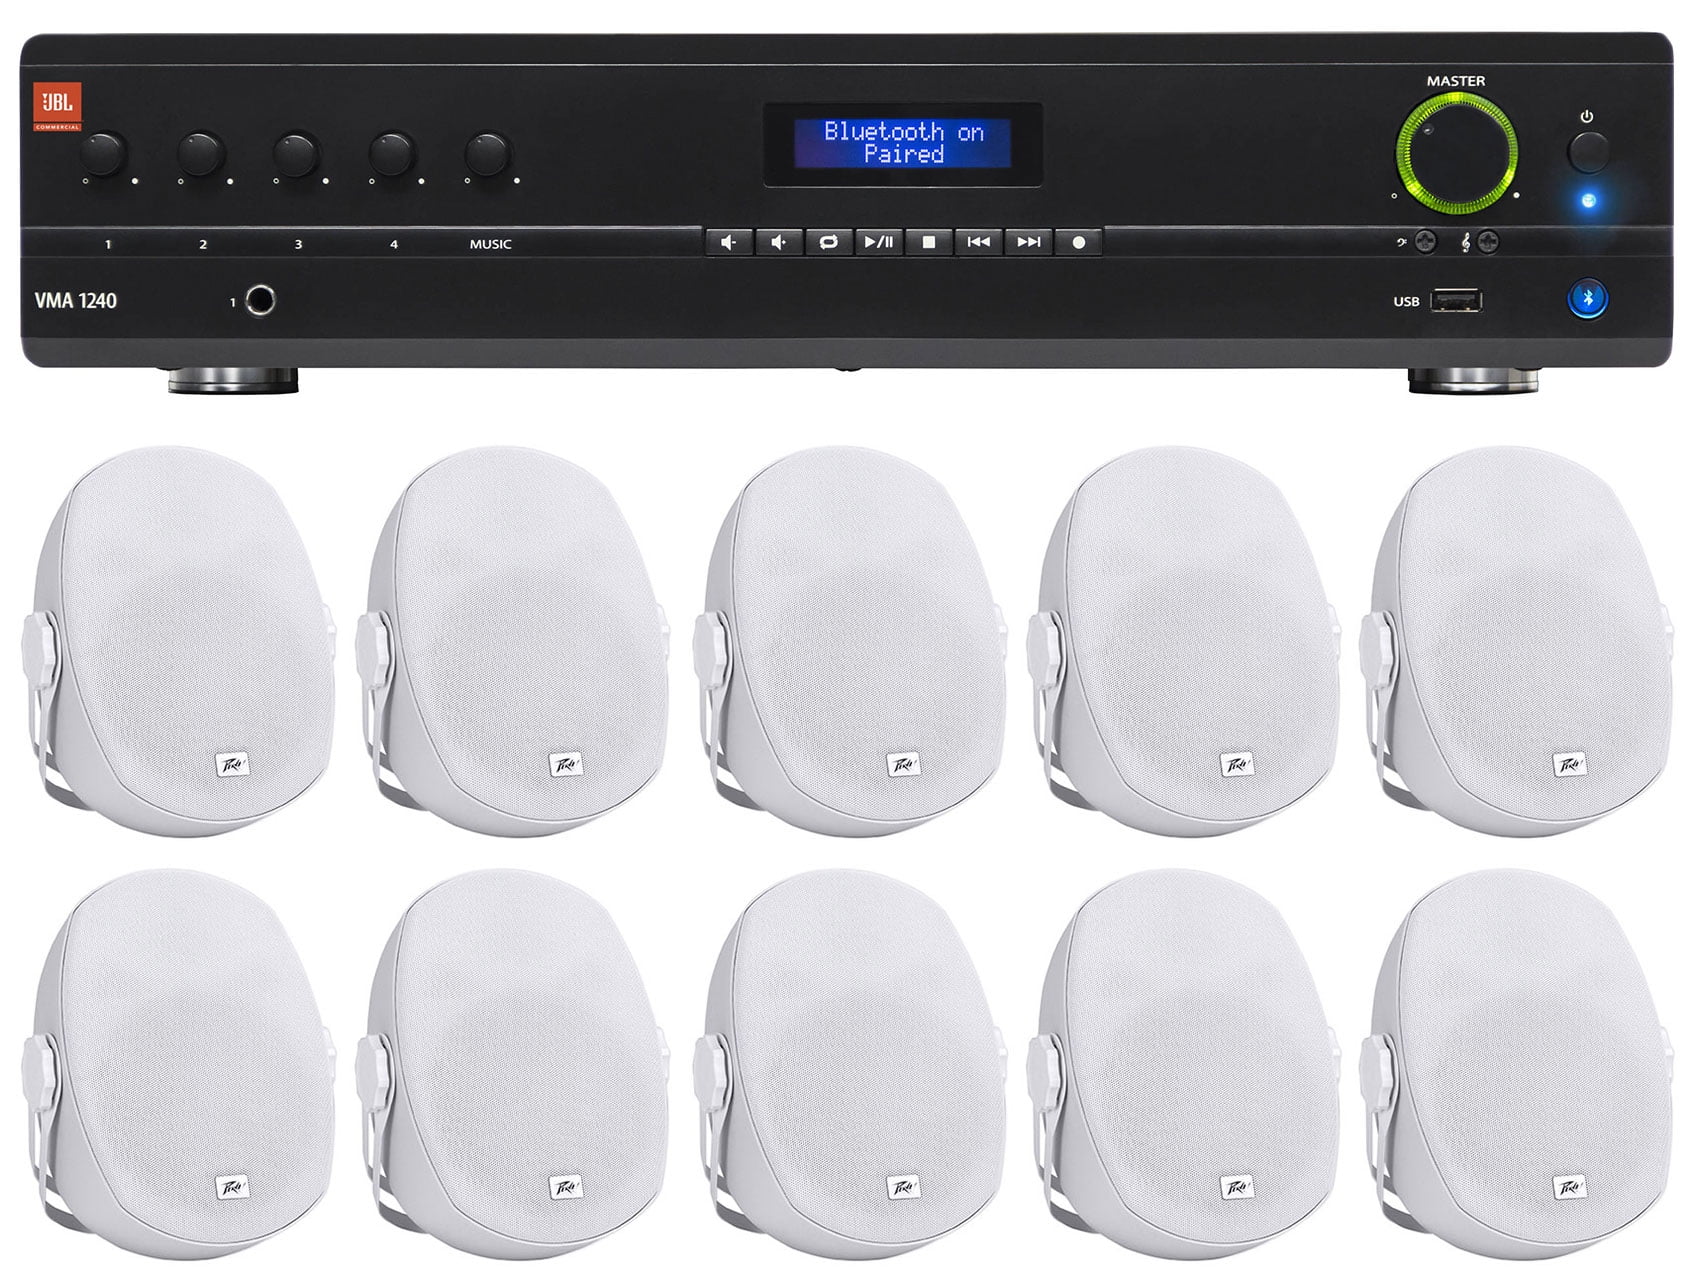 JBL Black 8 Ceiling Speakers for Restaurant 6 JBL VMA1240 240W 70v Amplifier+ 